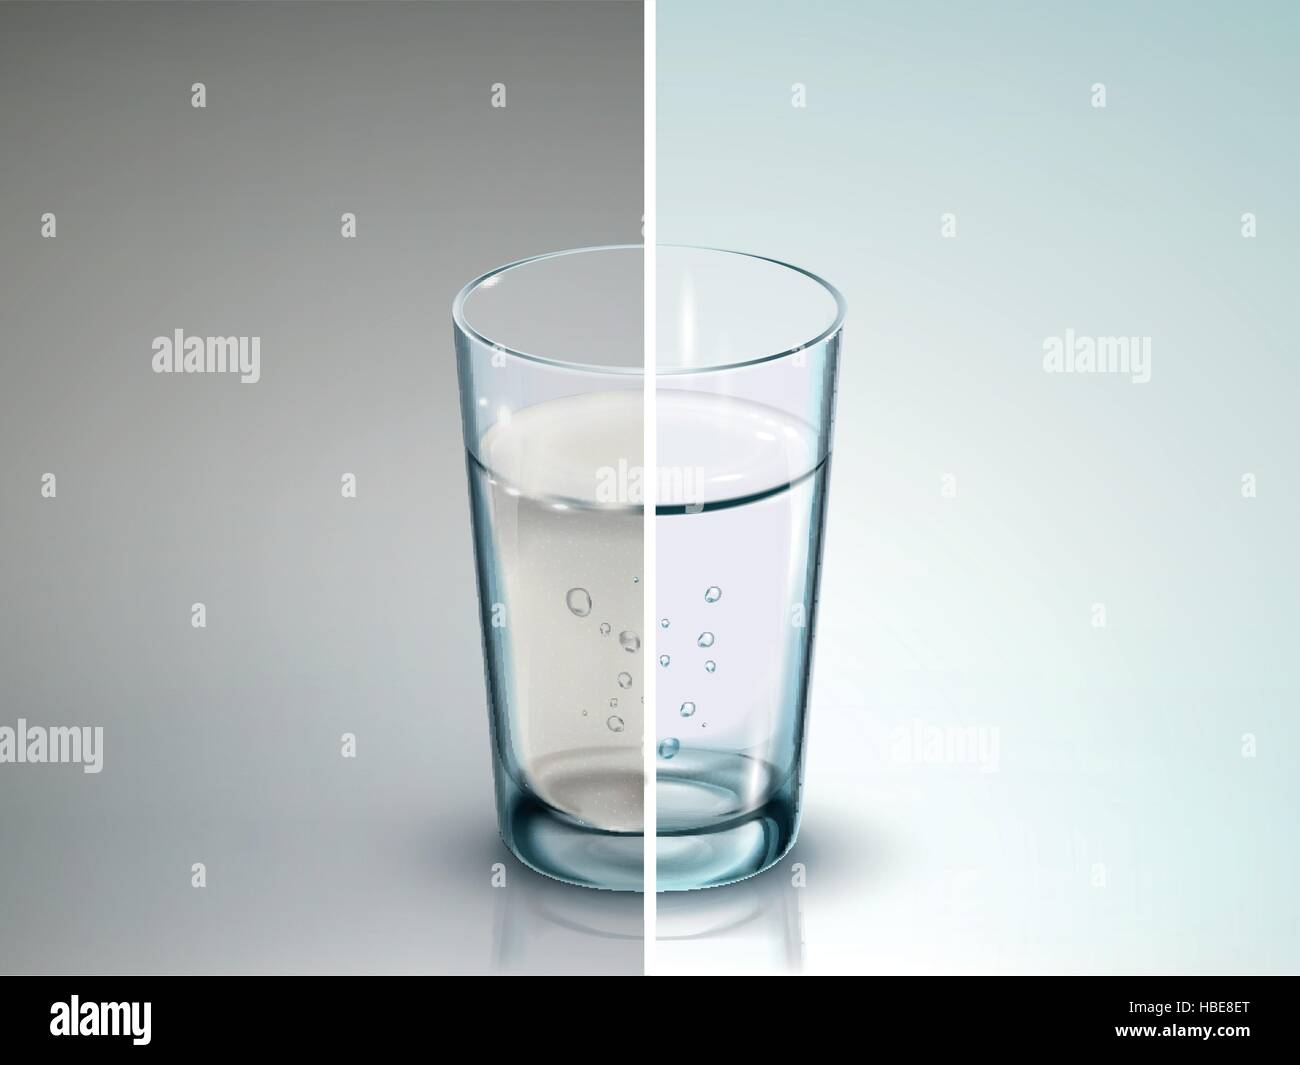 Vergleich der zwei Gläser Wasser - 3D-Illustration Stock Vektor